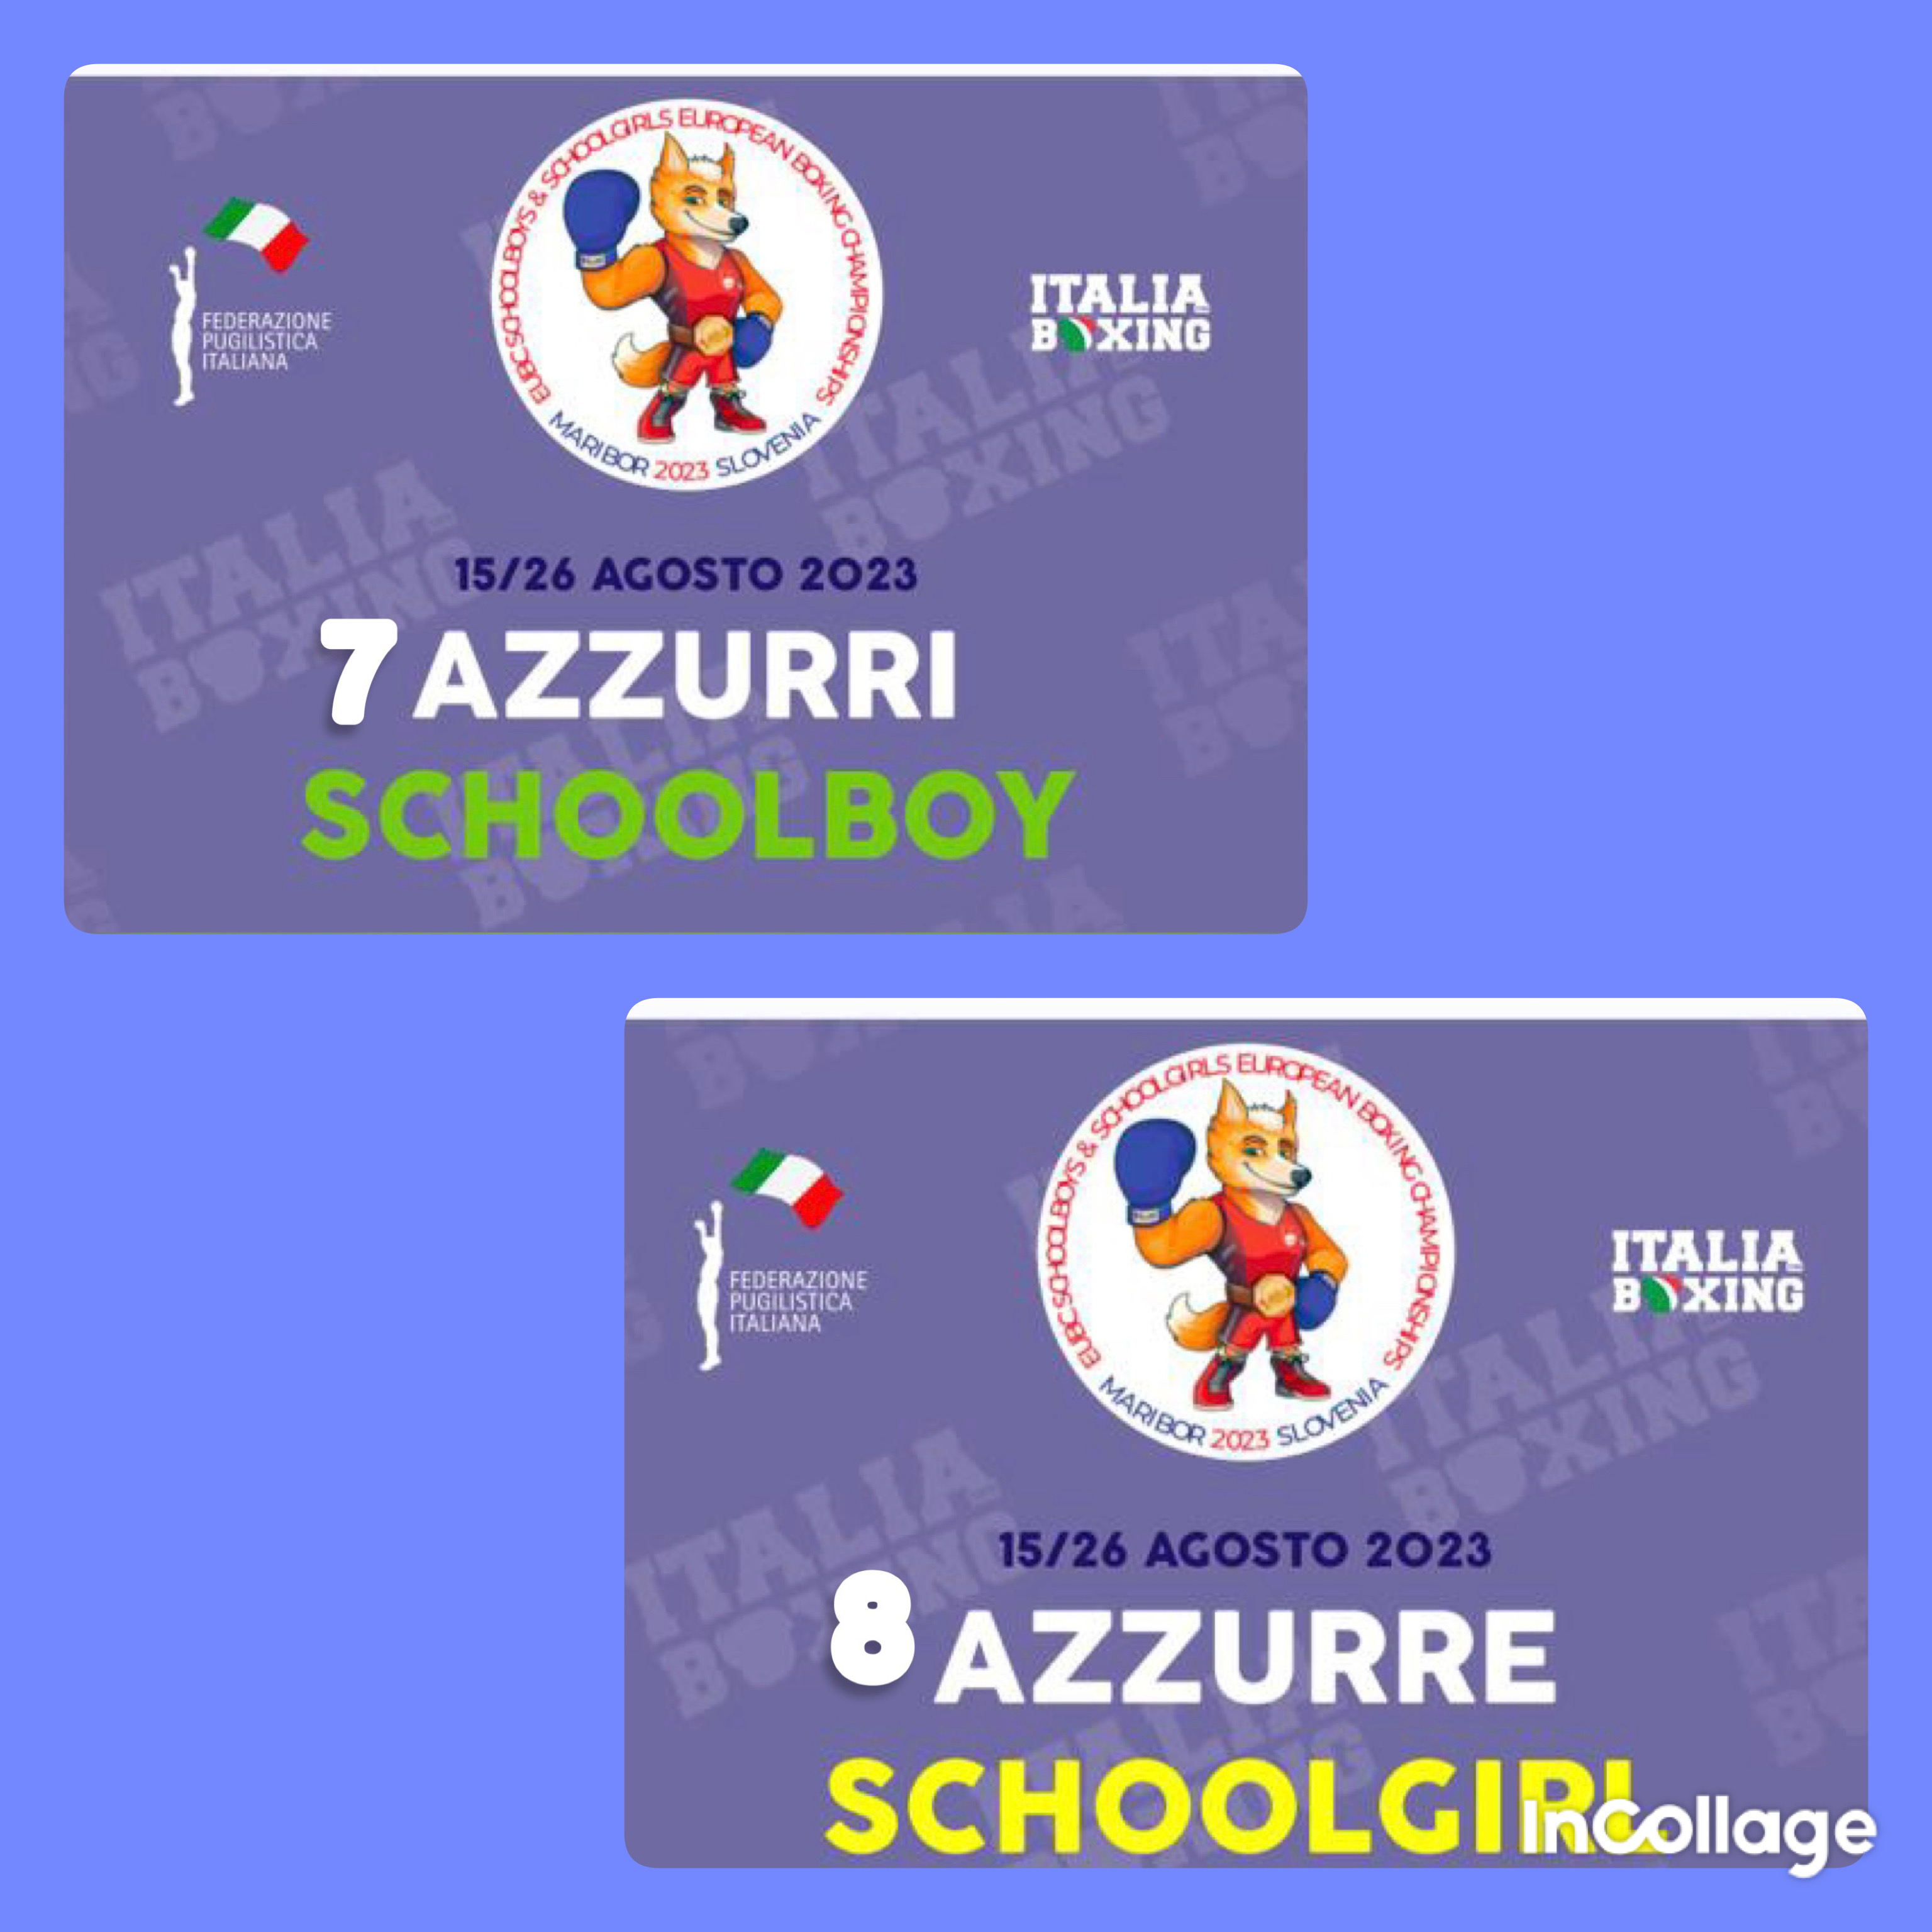 Euro SchoolBoy/Girl Maribor 2023: 7 Azzurri e 8 Azzurri in Gara 